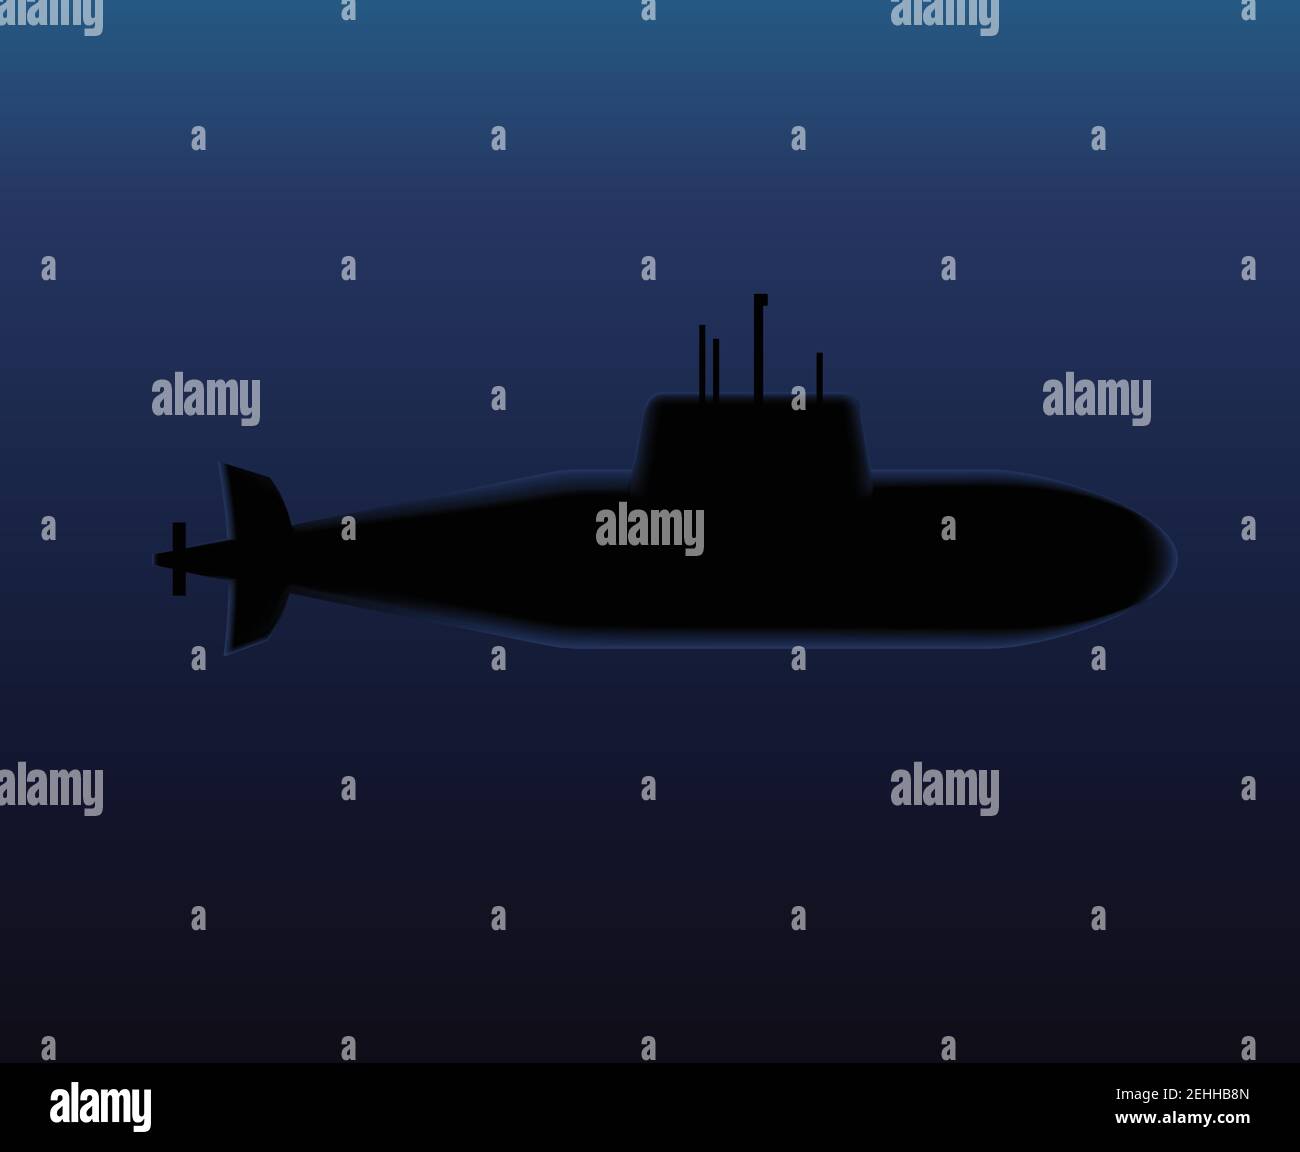 Plongée sous-marine militaire dans l'océan sombre Illustration vectorielle. Illustration de Vecteur